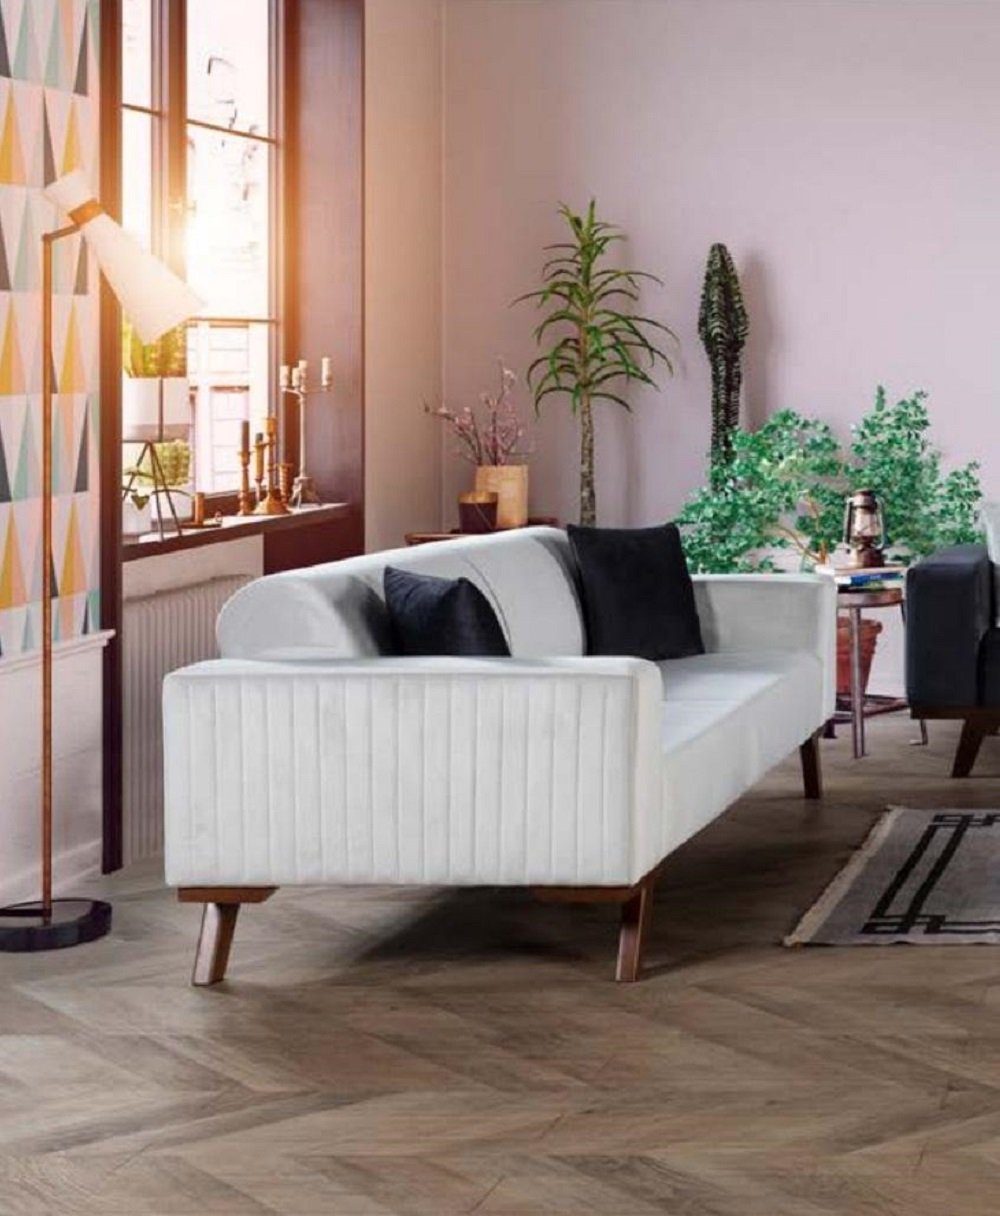 JVmoebel Sofa Luxus Dreisitzer Moderne Couch Möbel Weiß Couchen Stoff Textil